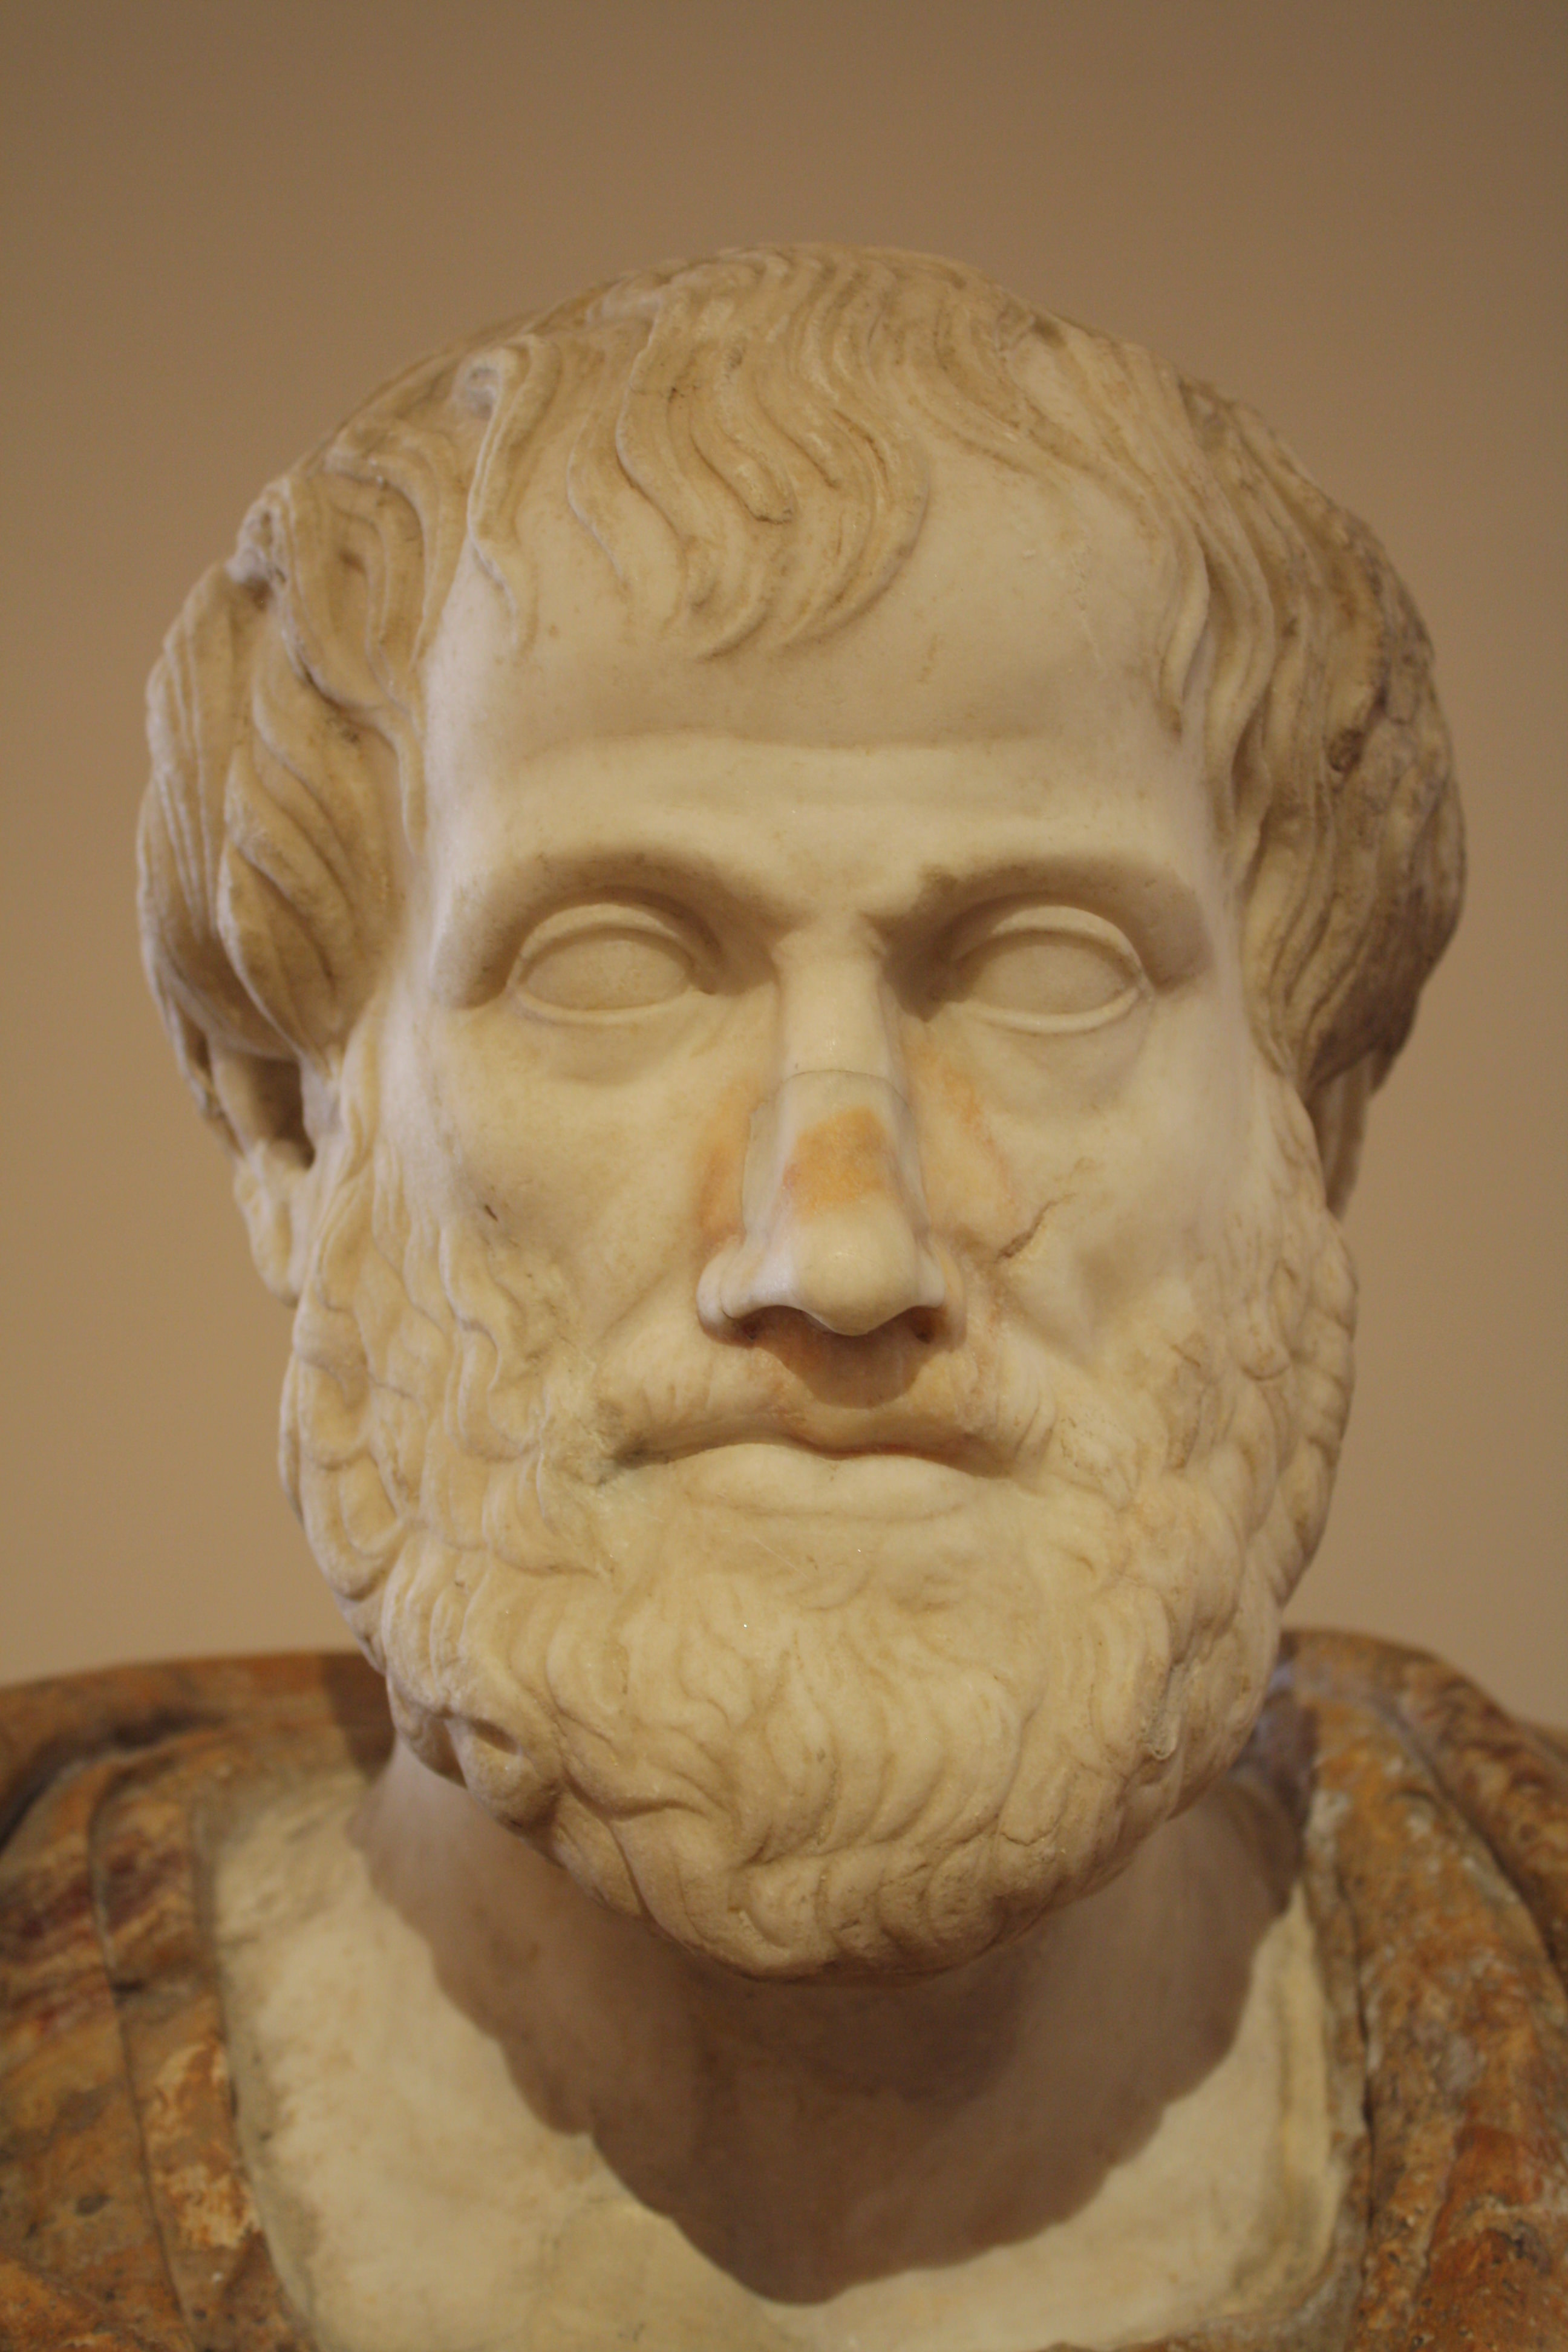 Aristóteles (384 AEC - 322 AEC), el filósofo y científico griego